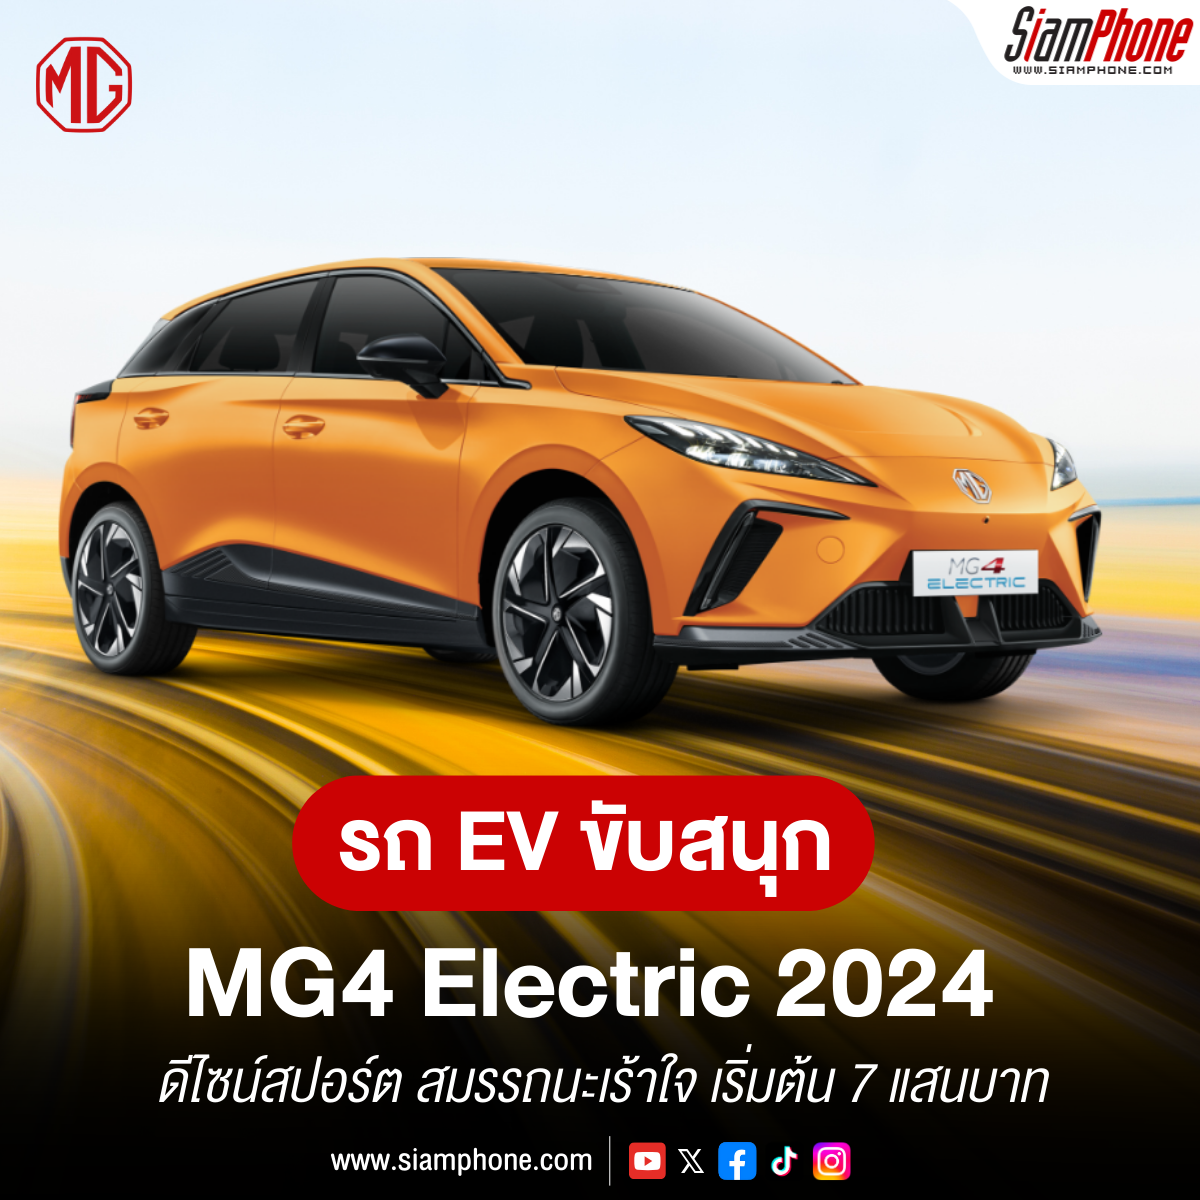  MG4 Electric 2024 ดีไซน์สปอร์ต สมรรถนะเร้าใจ เริ่มต้น 7 แสนบาท